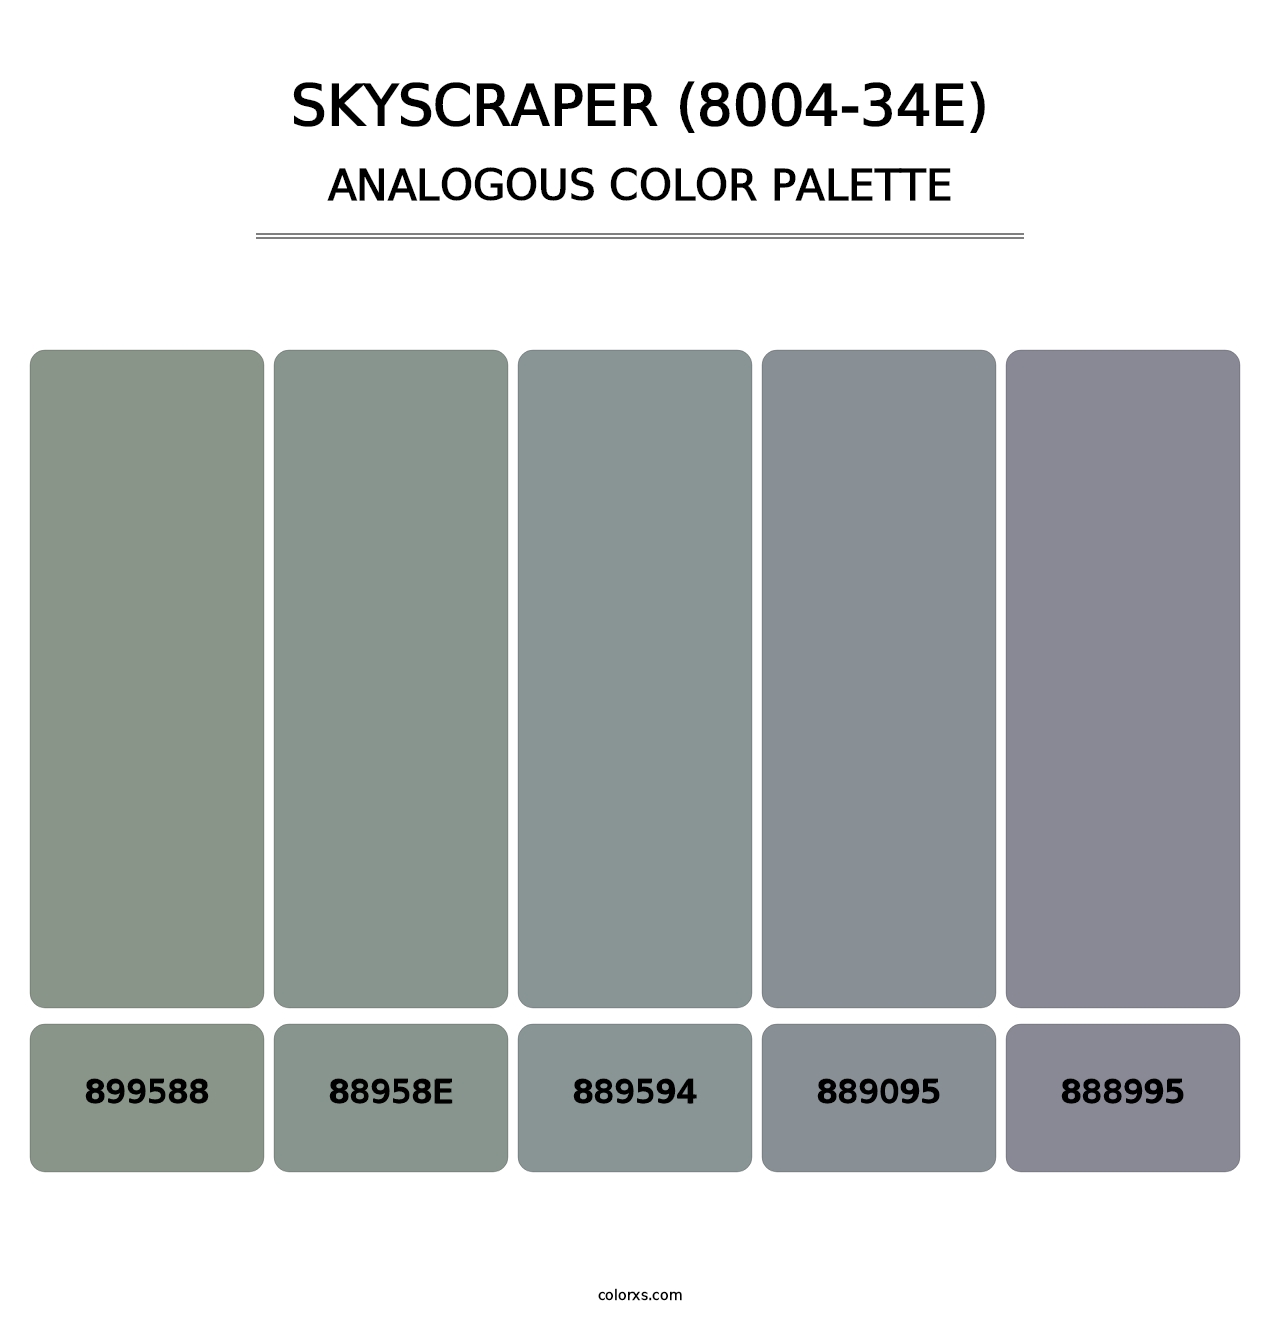 Skyscraper (8004-34E) - Analogous Color Palette